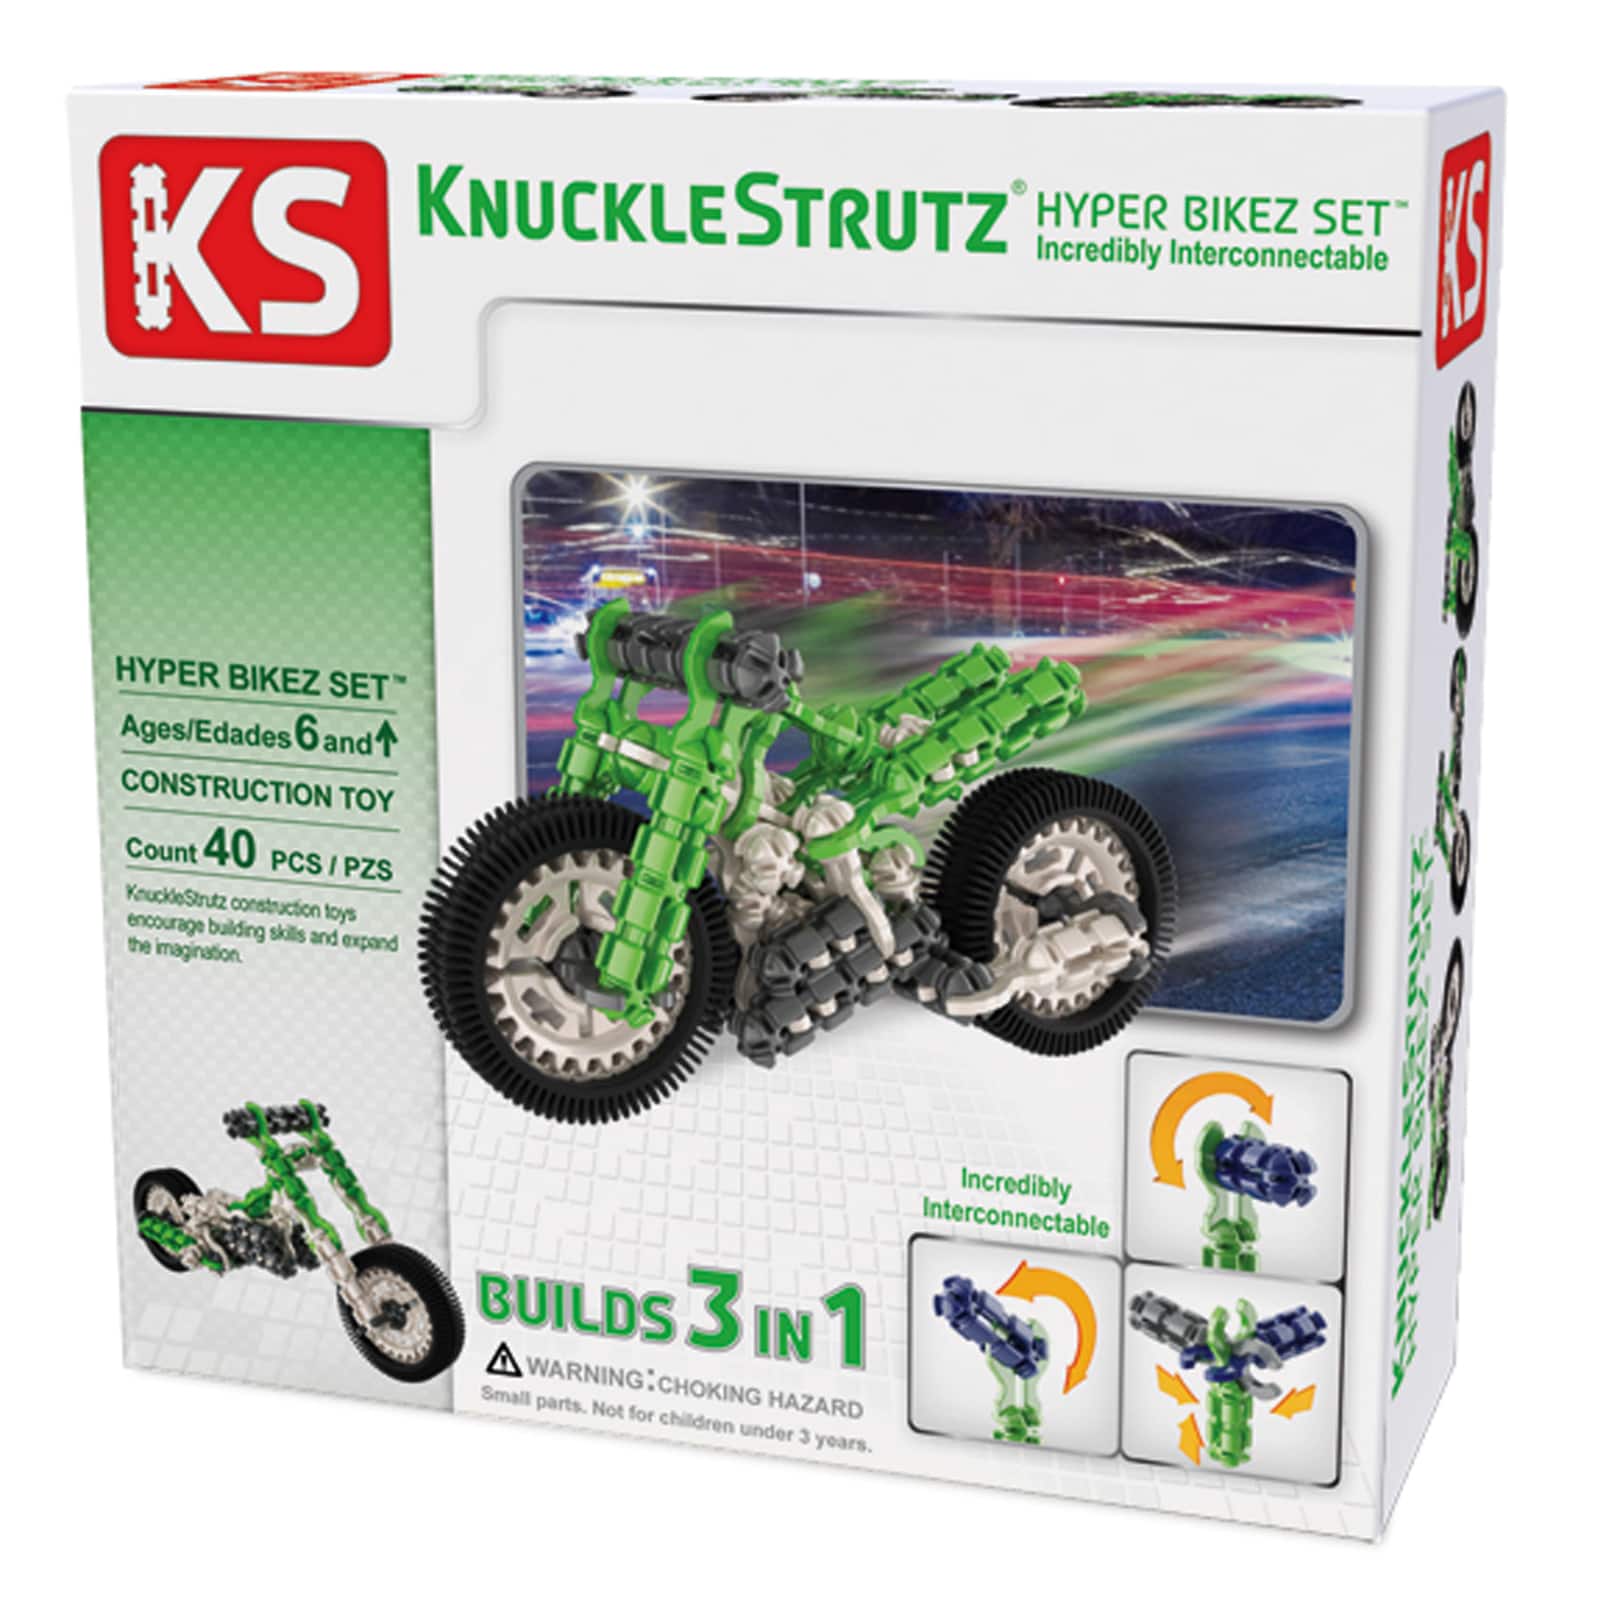 KnuckleStrutz&#xAE; Hyper Bikez Set&#x2122;